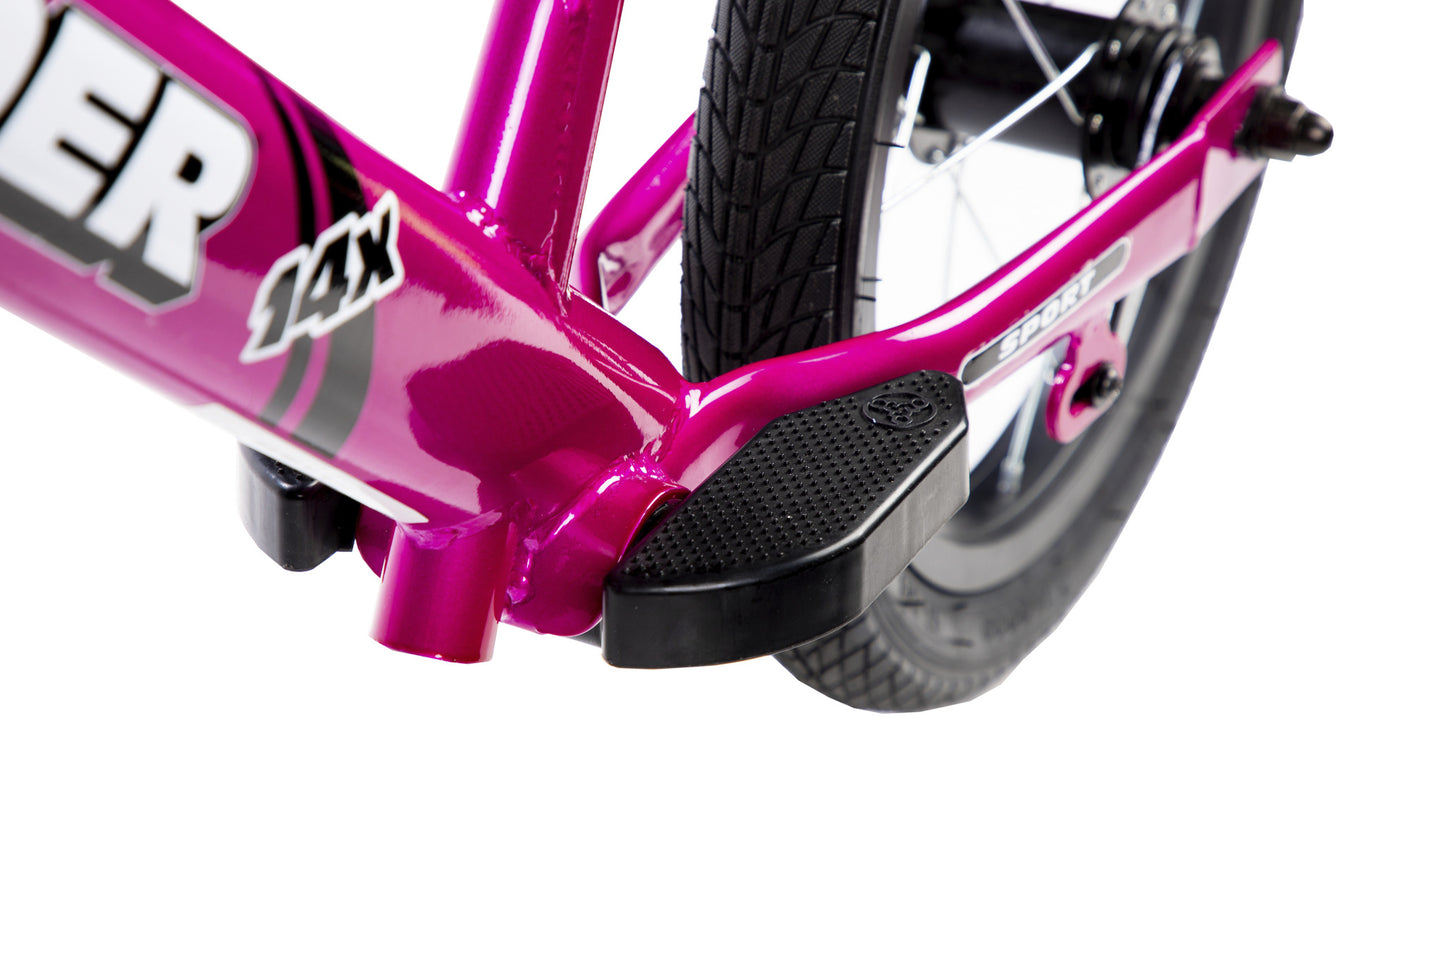 Strider 14X Sport Balance Bike - Pink